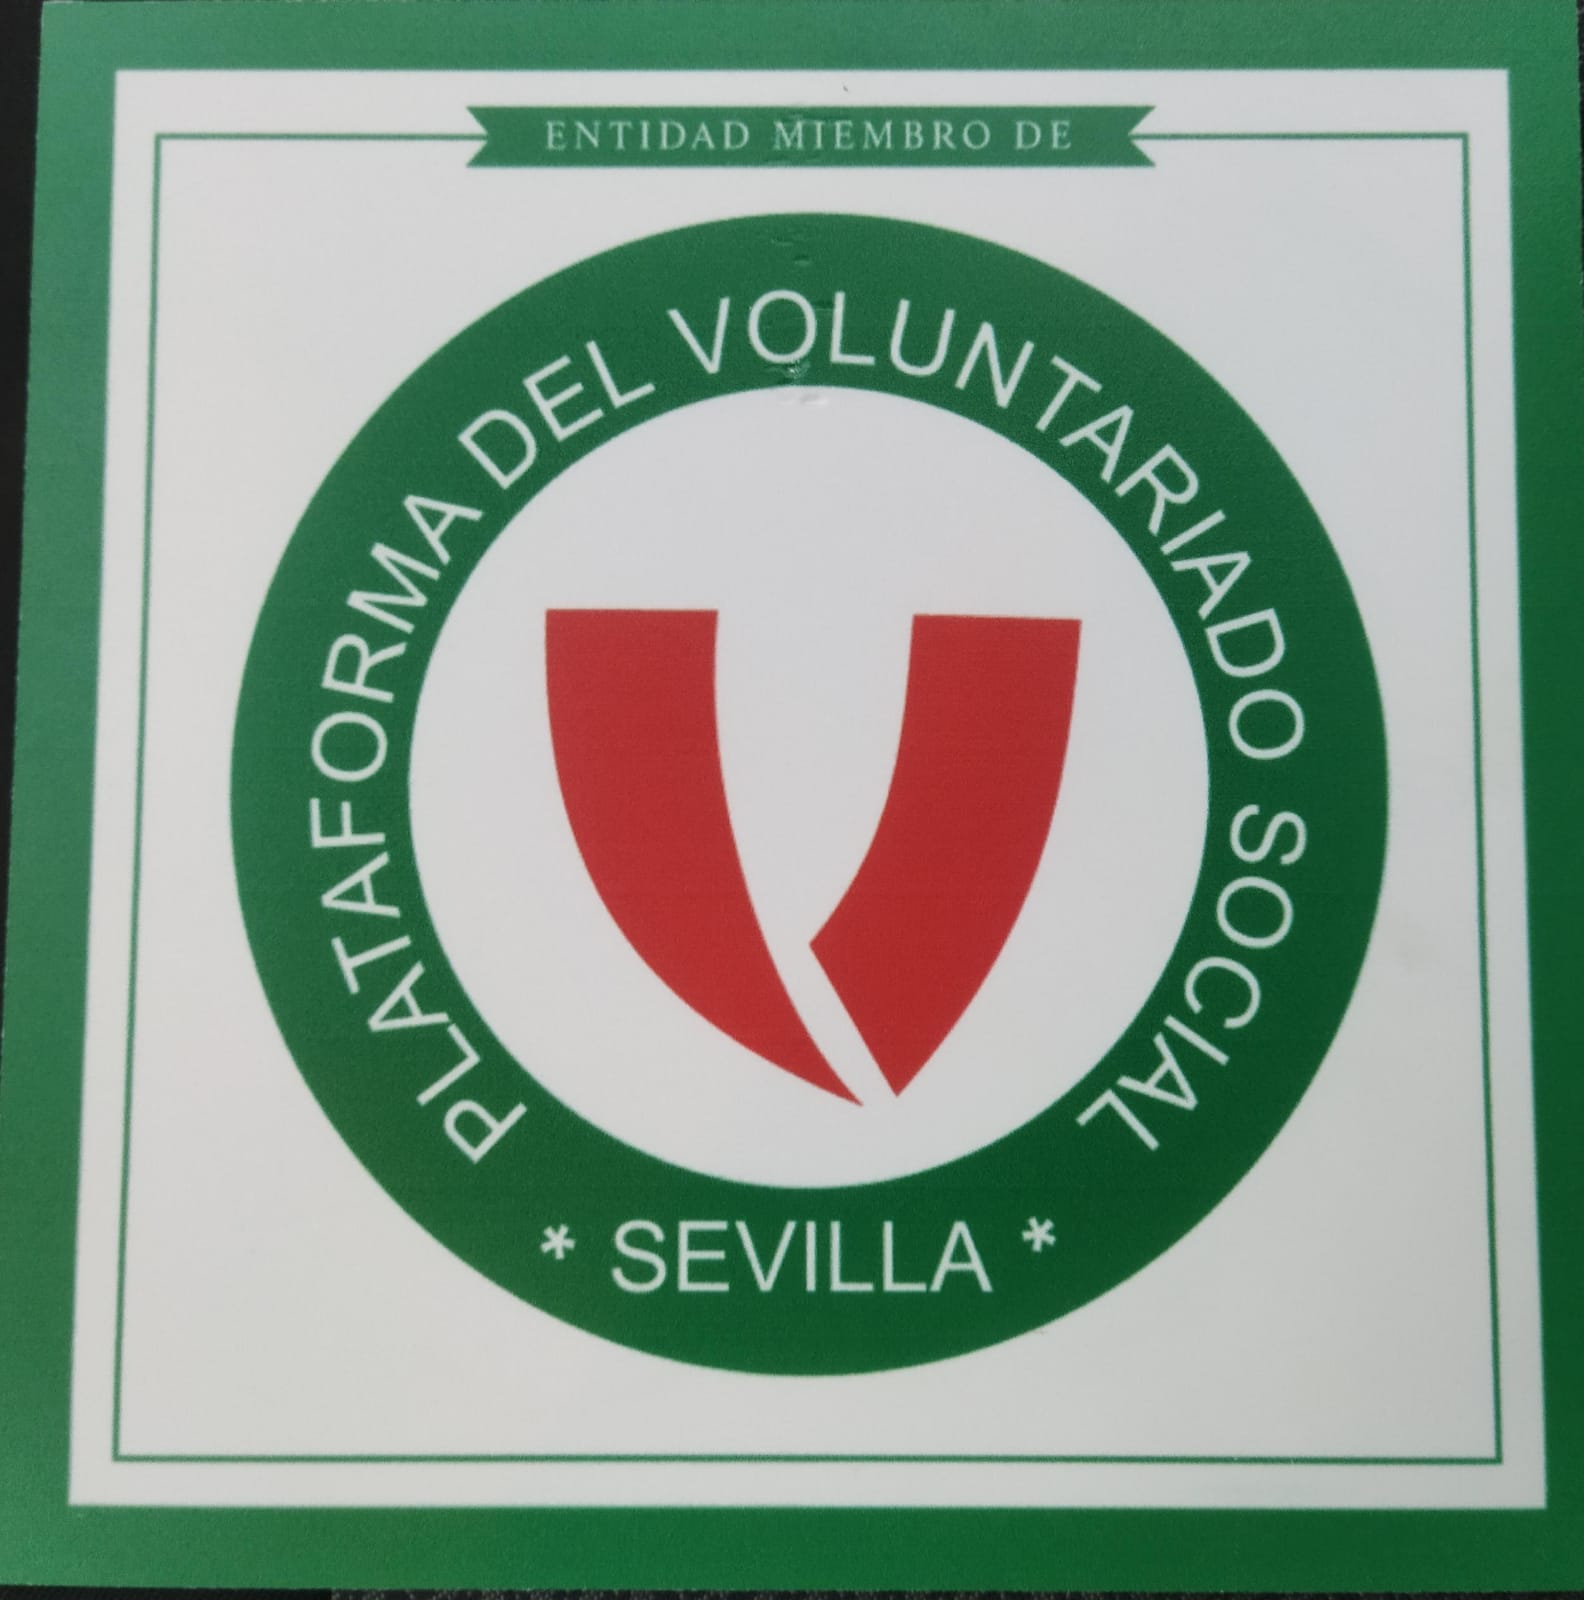 Entidad Miembro Plataforma del Voluntariado de Sevilla